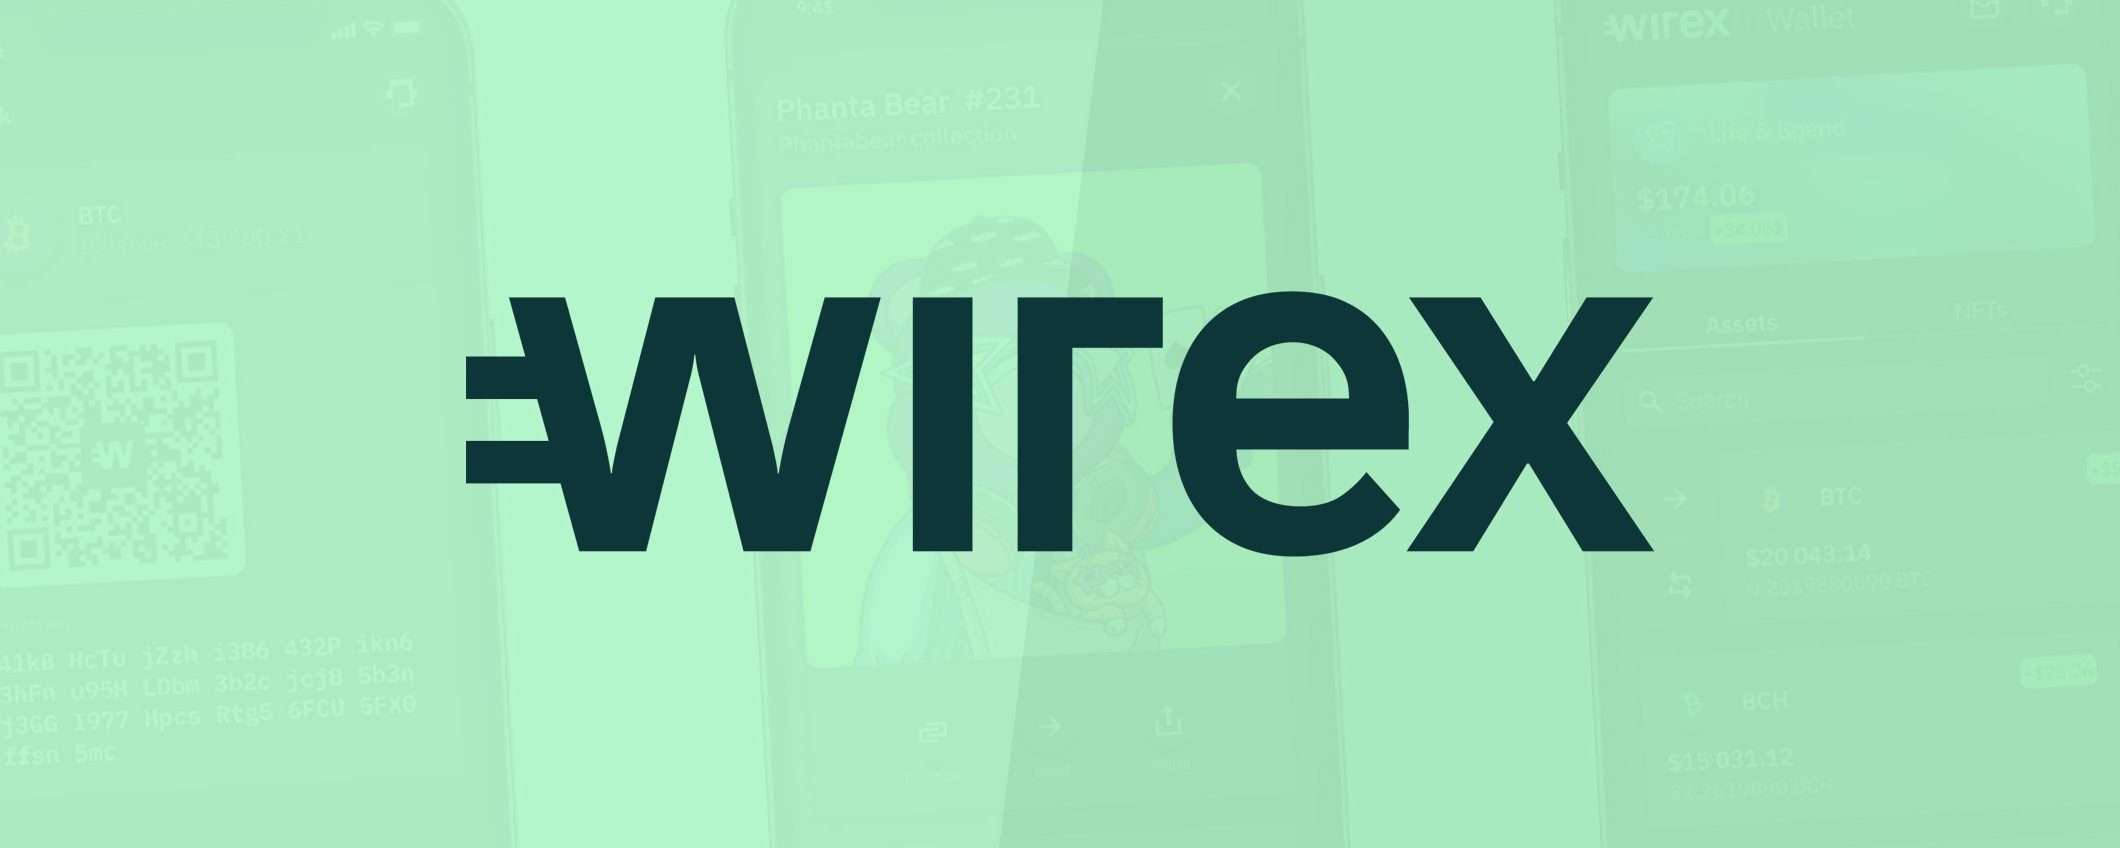 Wirex: fino all'8% di cashback e altri vantaggi